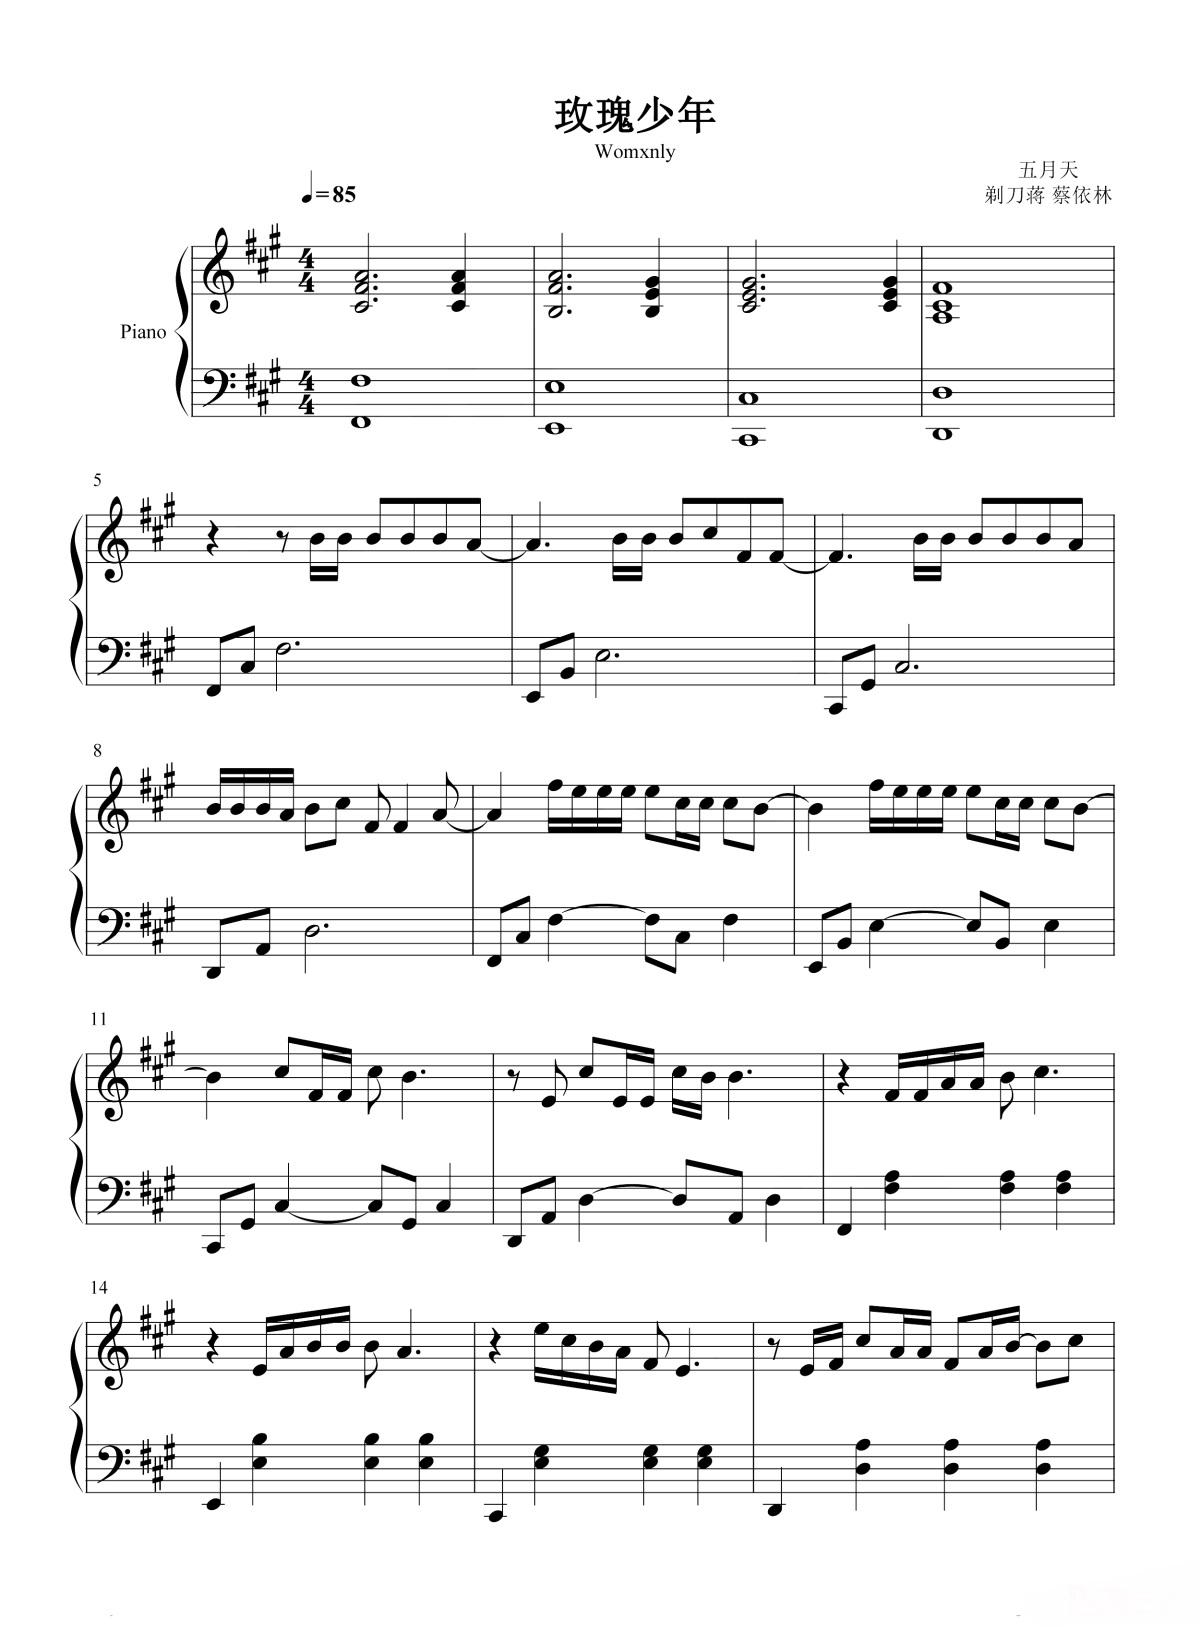 《玫瑰少年》的钢琴谱钢琴曲谱 - 五月天